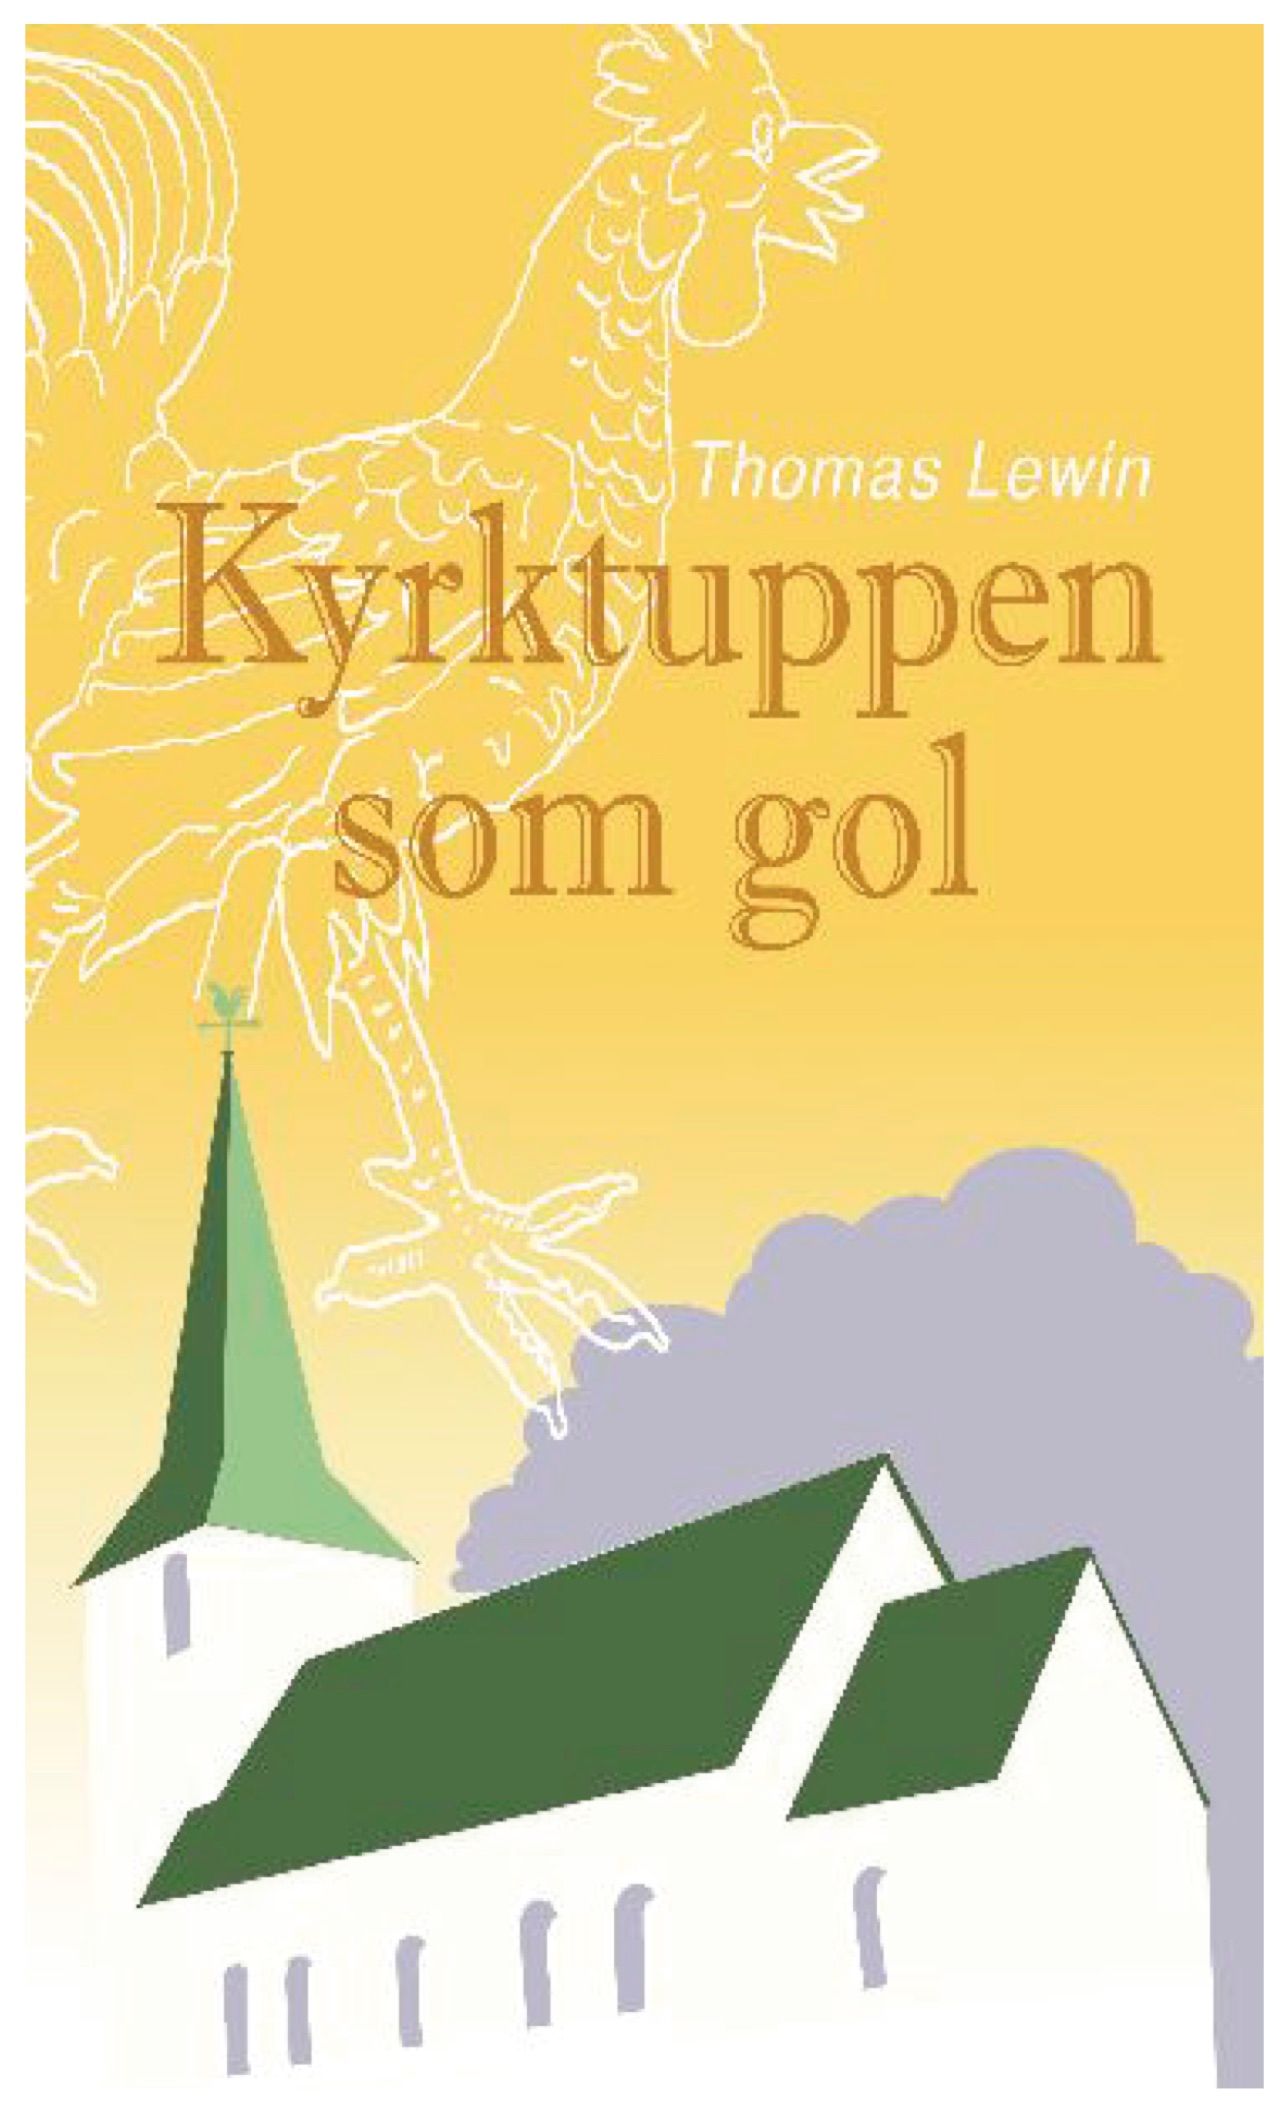 Kyrktuppen som gol, e-bog af Thomas Lewin